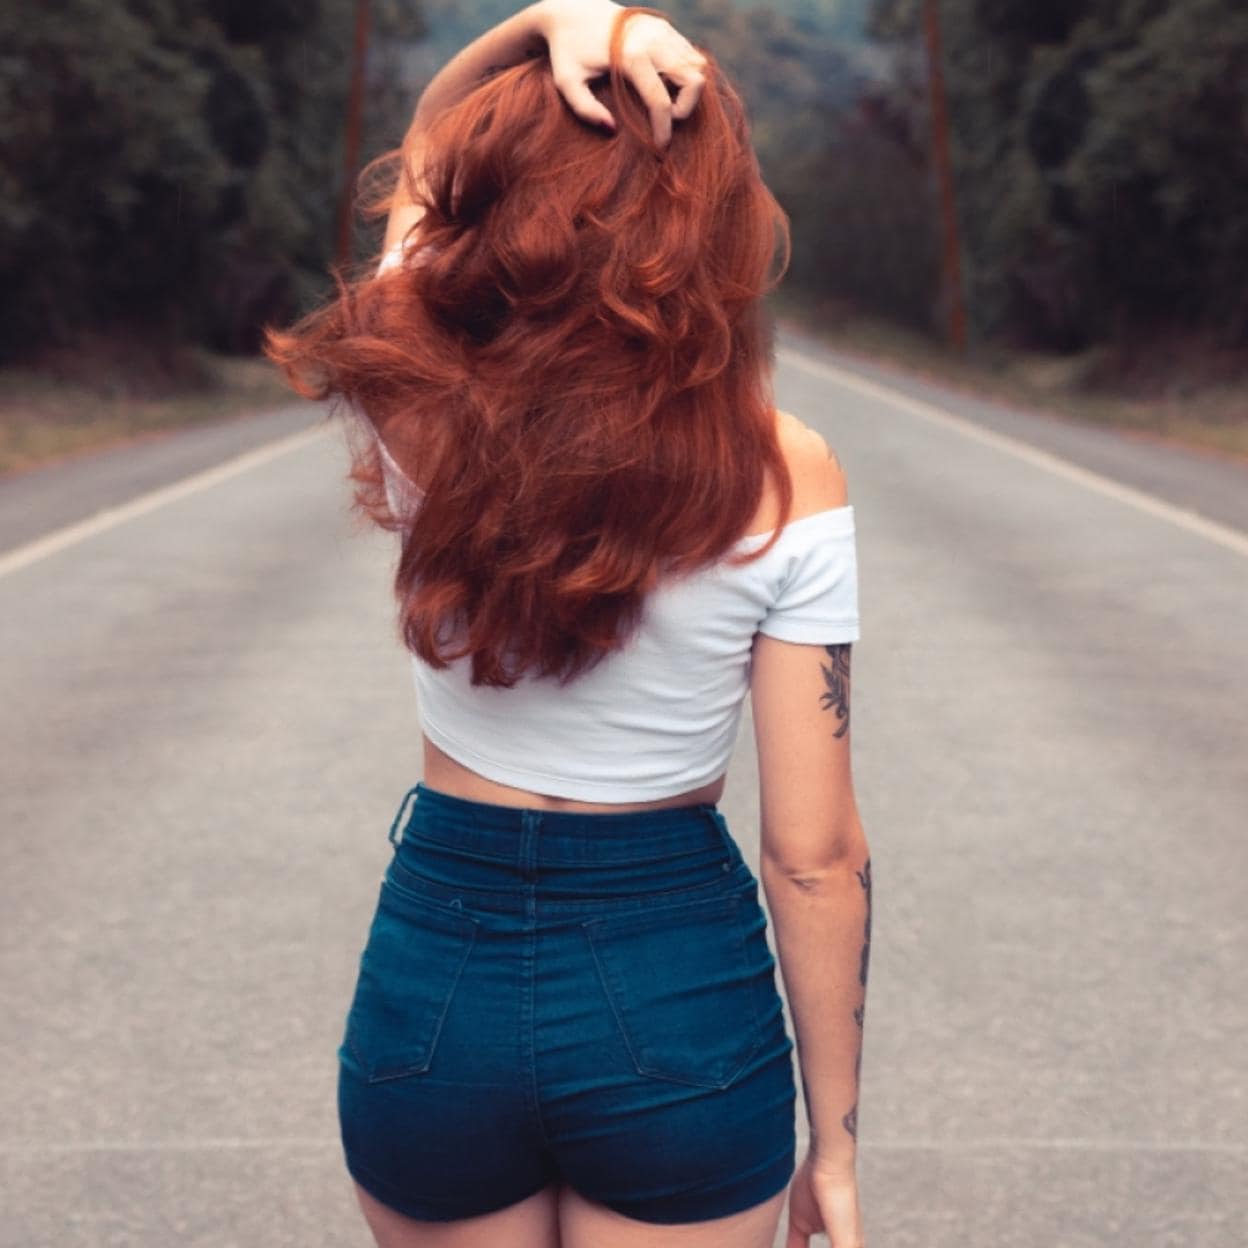 Queratina, mejor tratamiento antiencrespamiento para hidratar y controlar tu cabello rebelde y conseguir una melena Instagram | Mujer Hoy